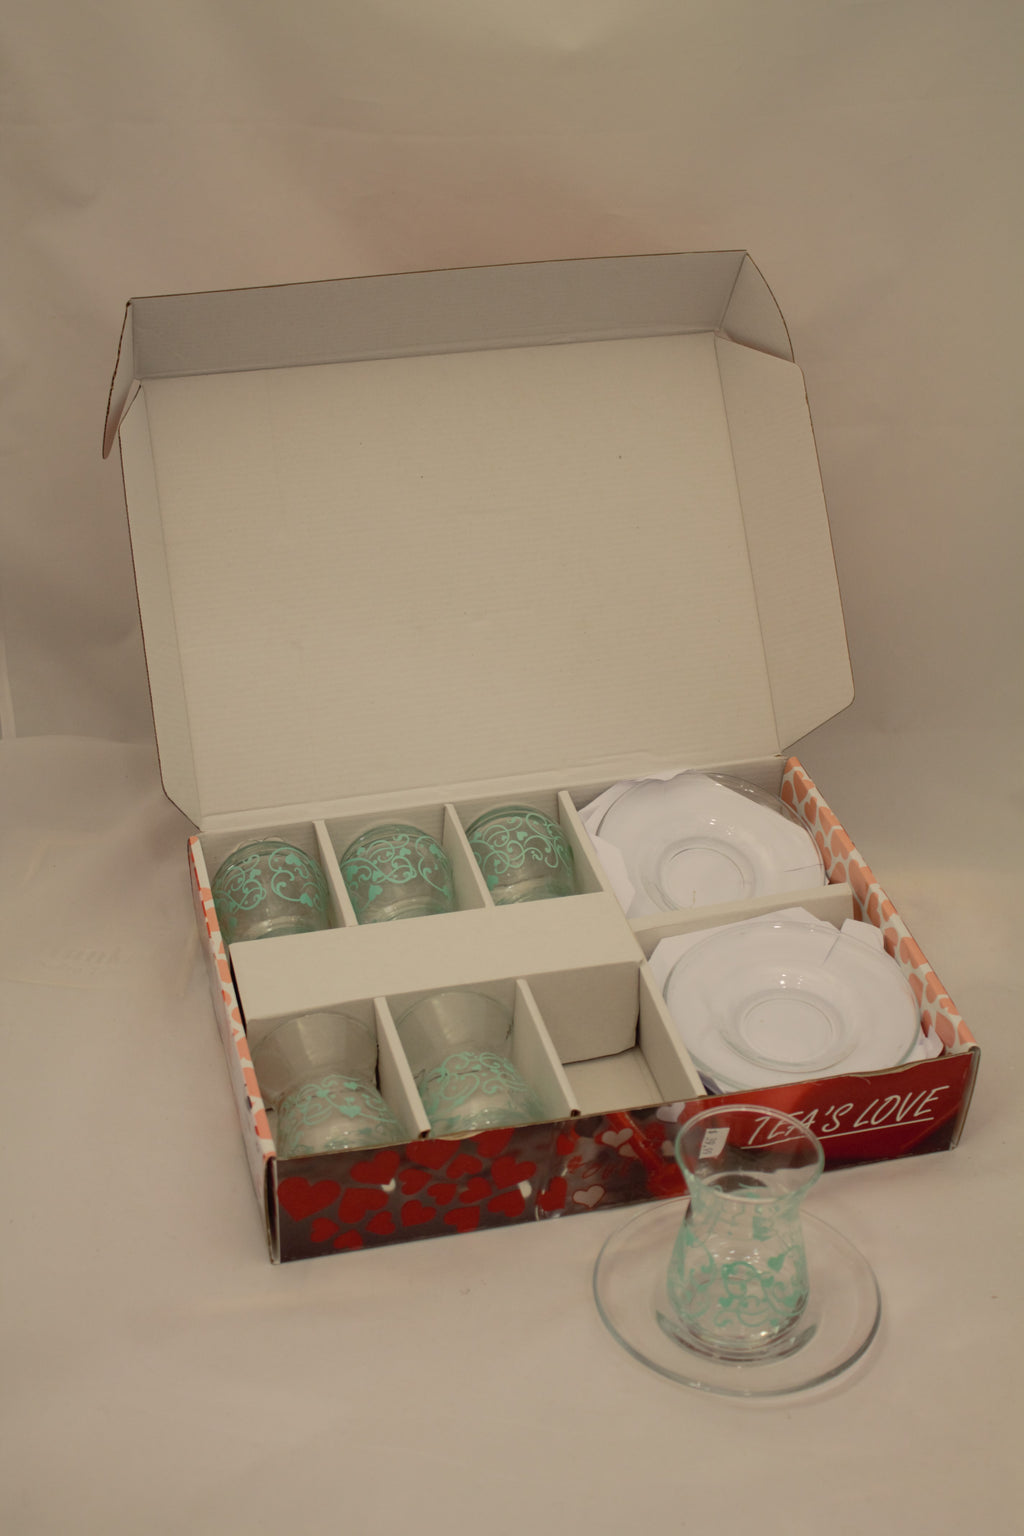 Abka Tea Set, Tea Set, Glass Set, Drink Set, Turquoise Set, Turkish Tea Set, Handcrafted